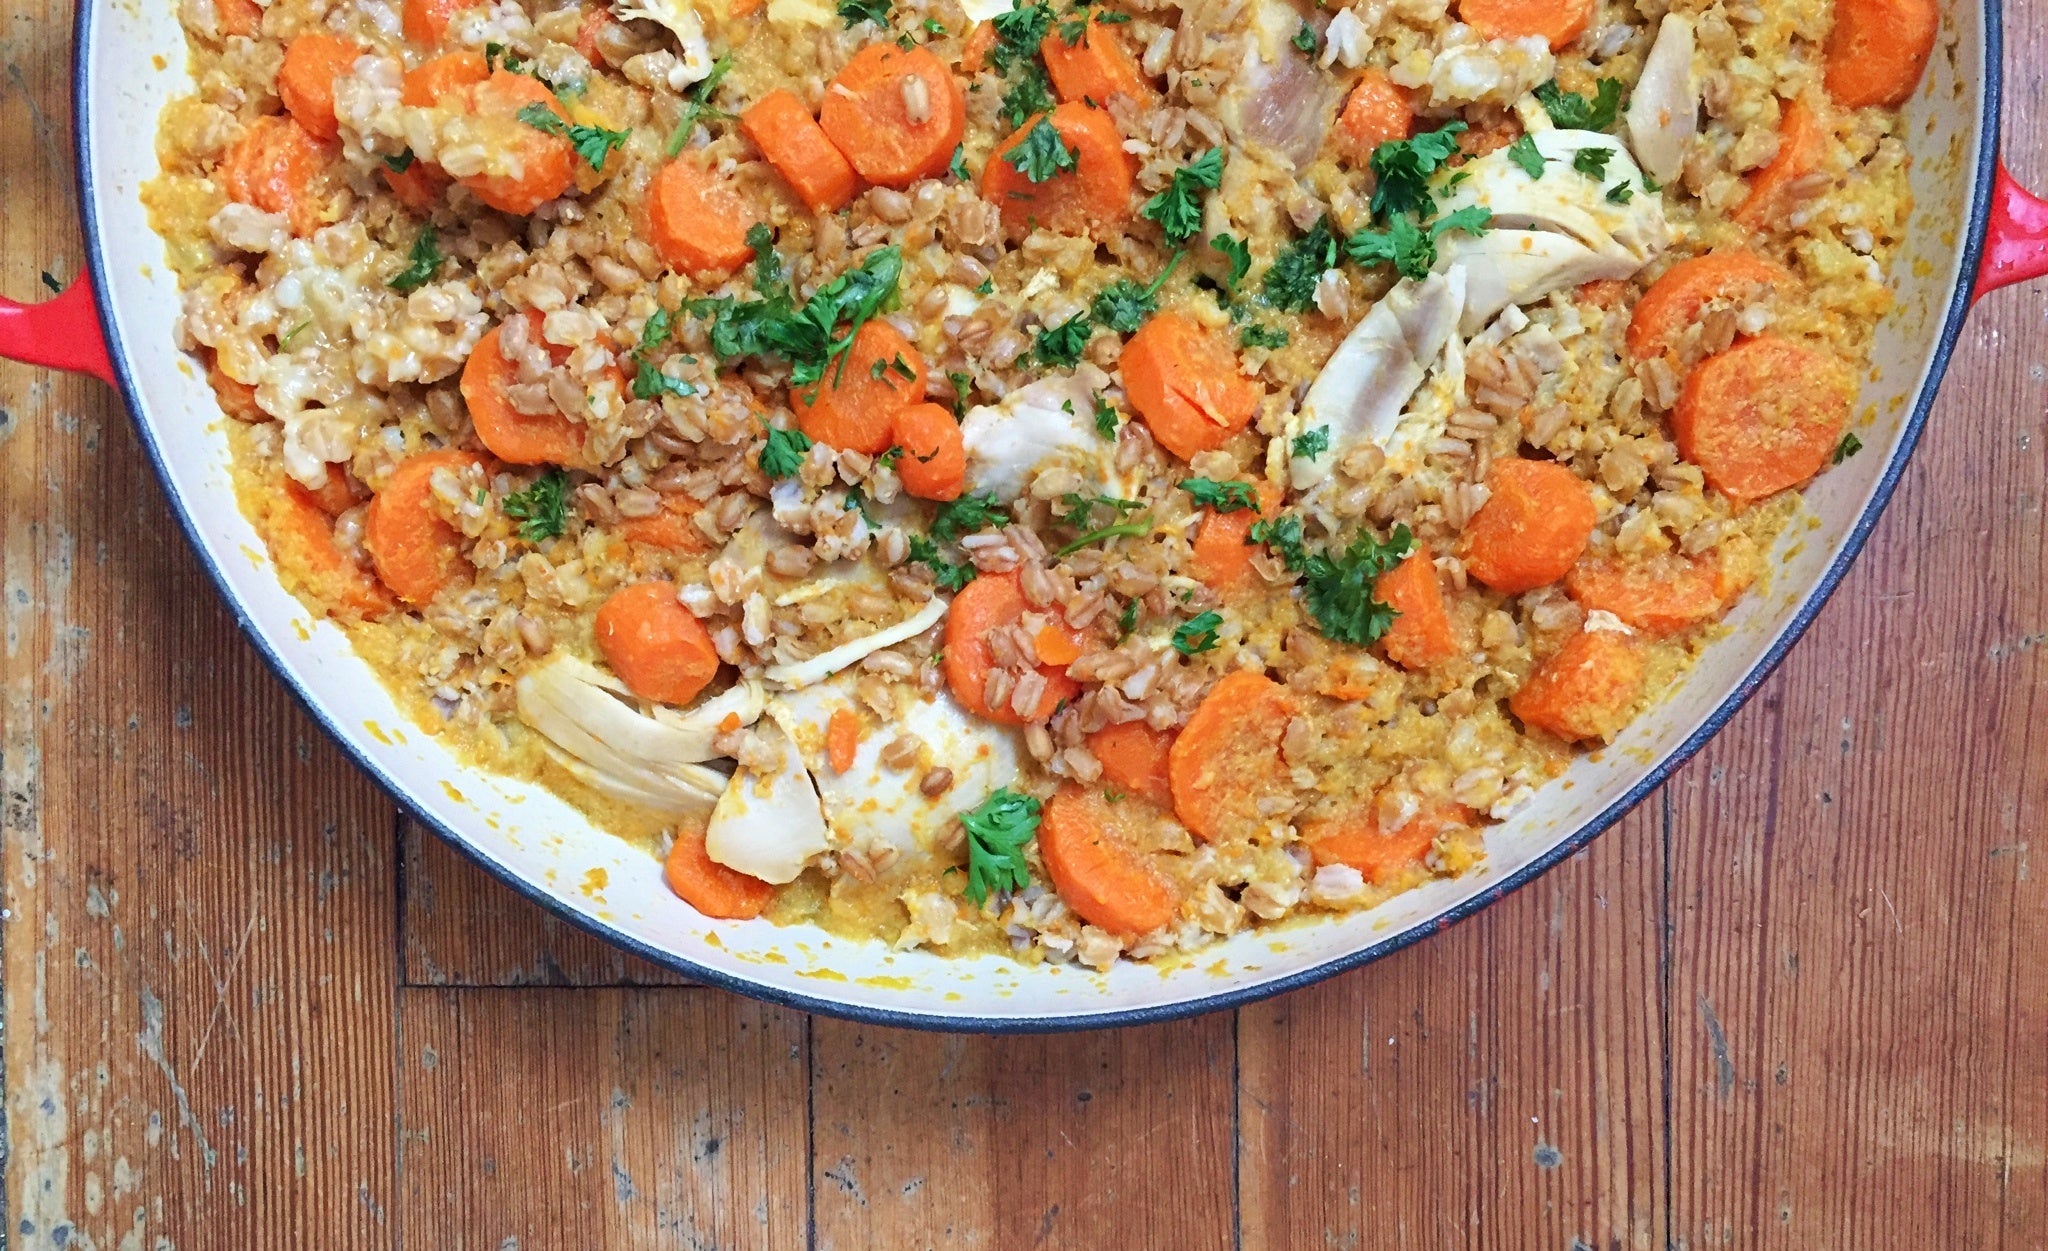 Pollo, zanahorias y arroz en una olla